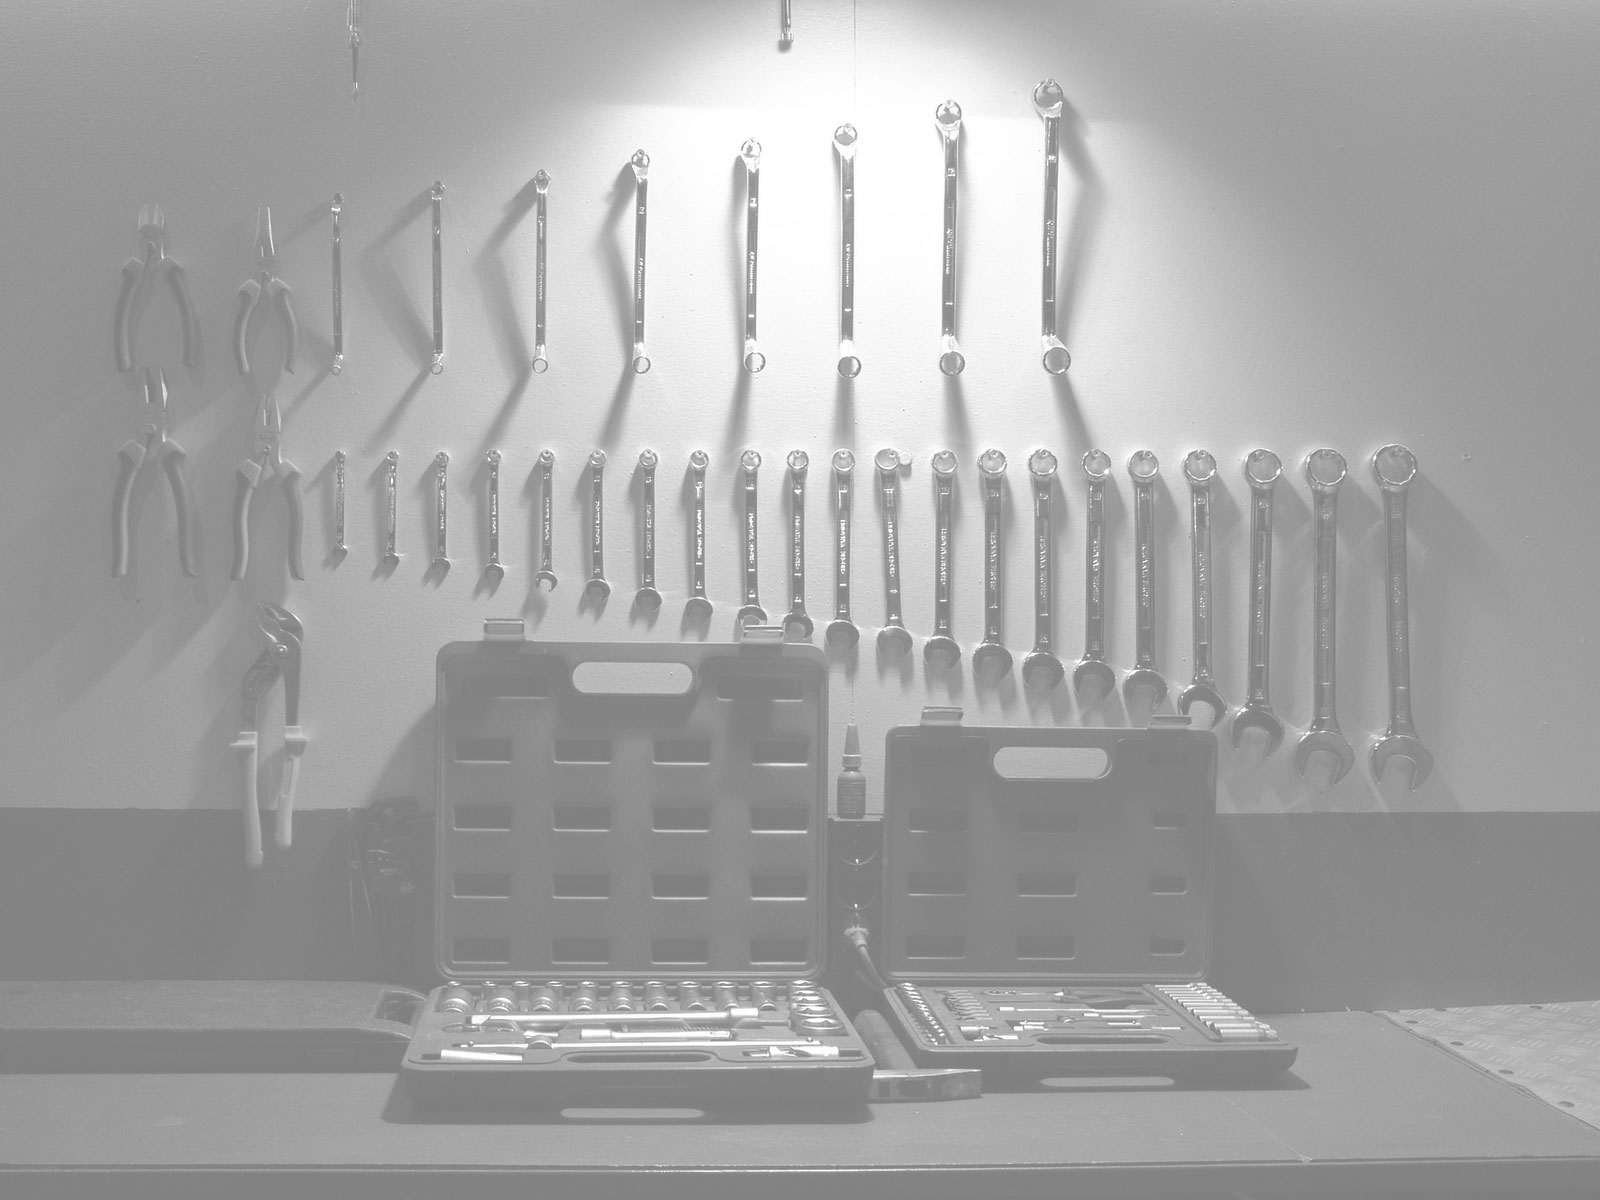 bg-tools